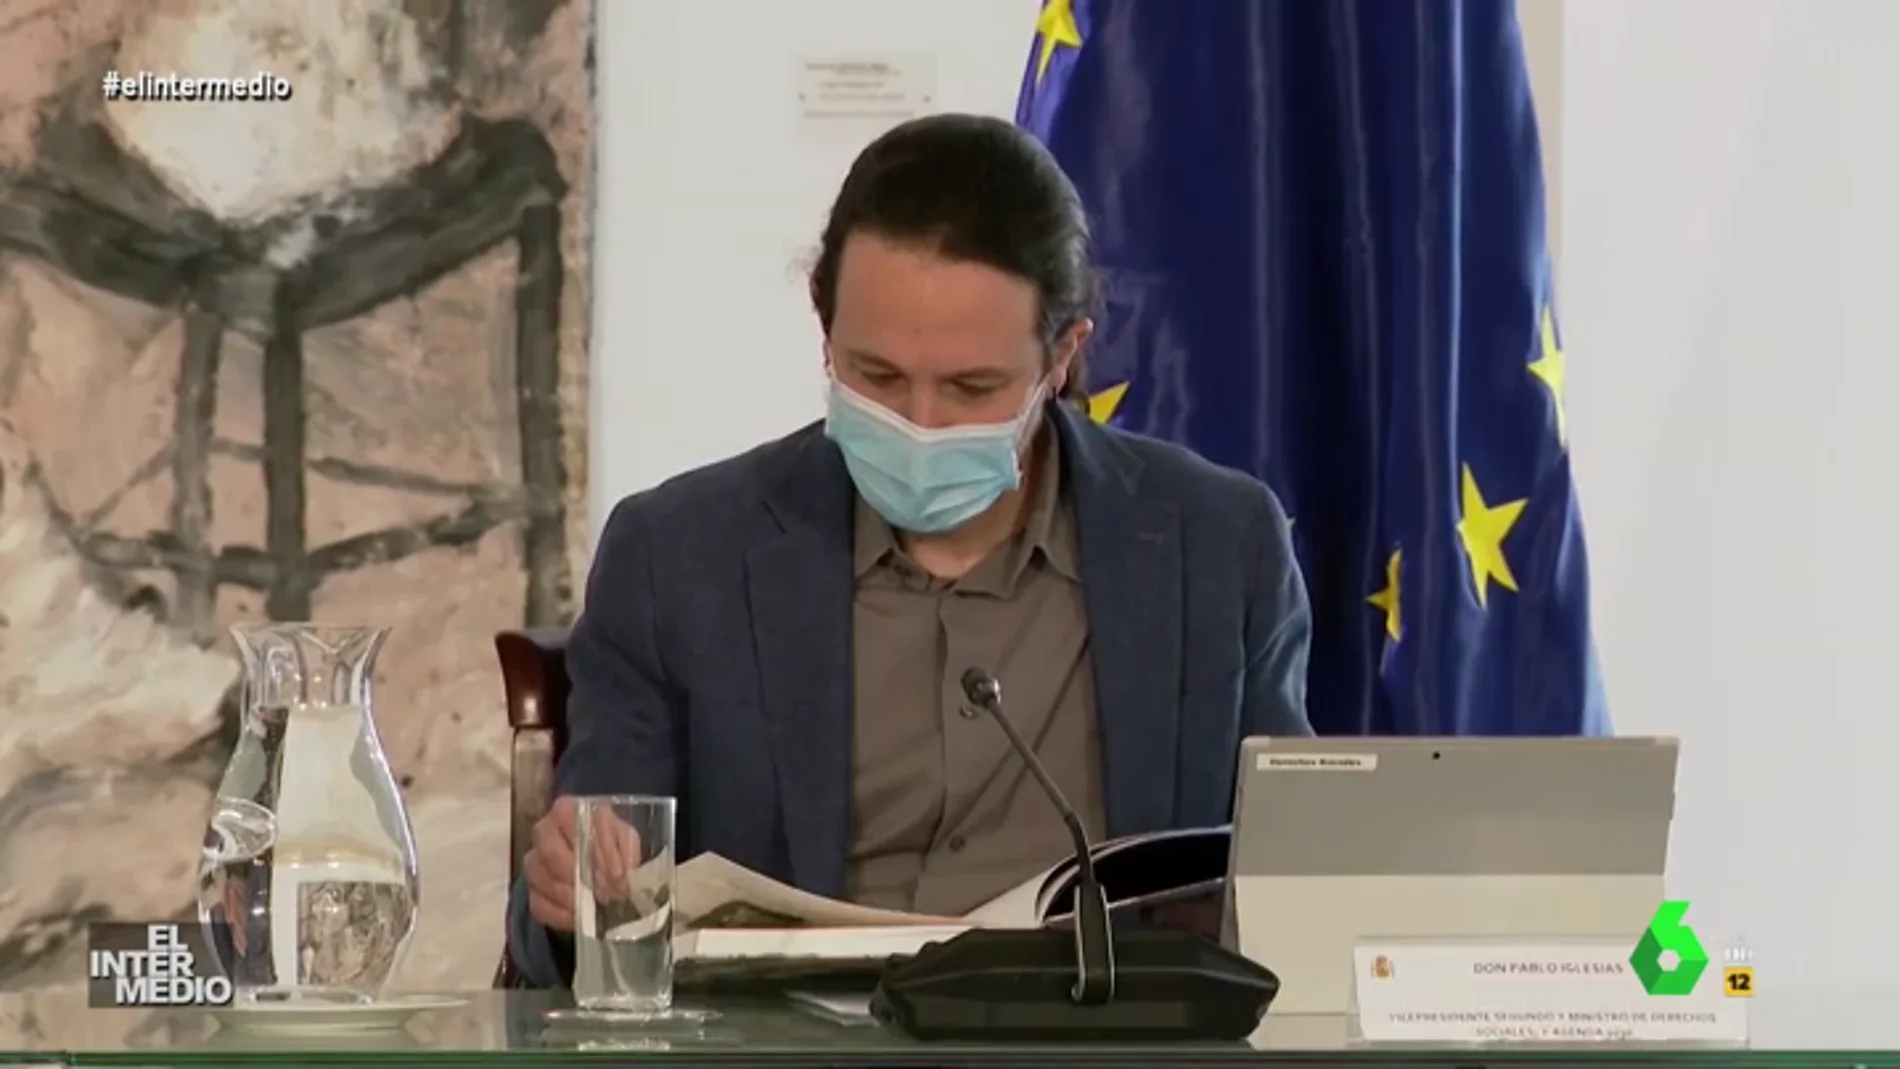 Vídeo Manipulado - Pablo Iglesias simula leer un libro pero este tiene las hojas en blanco